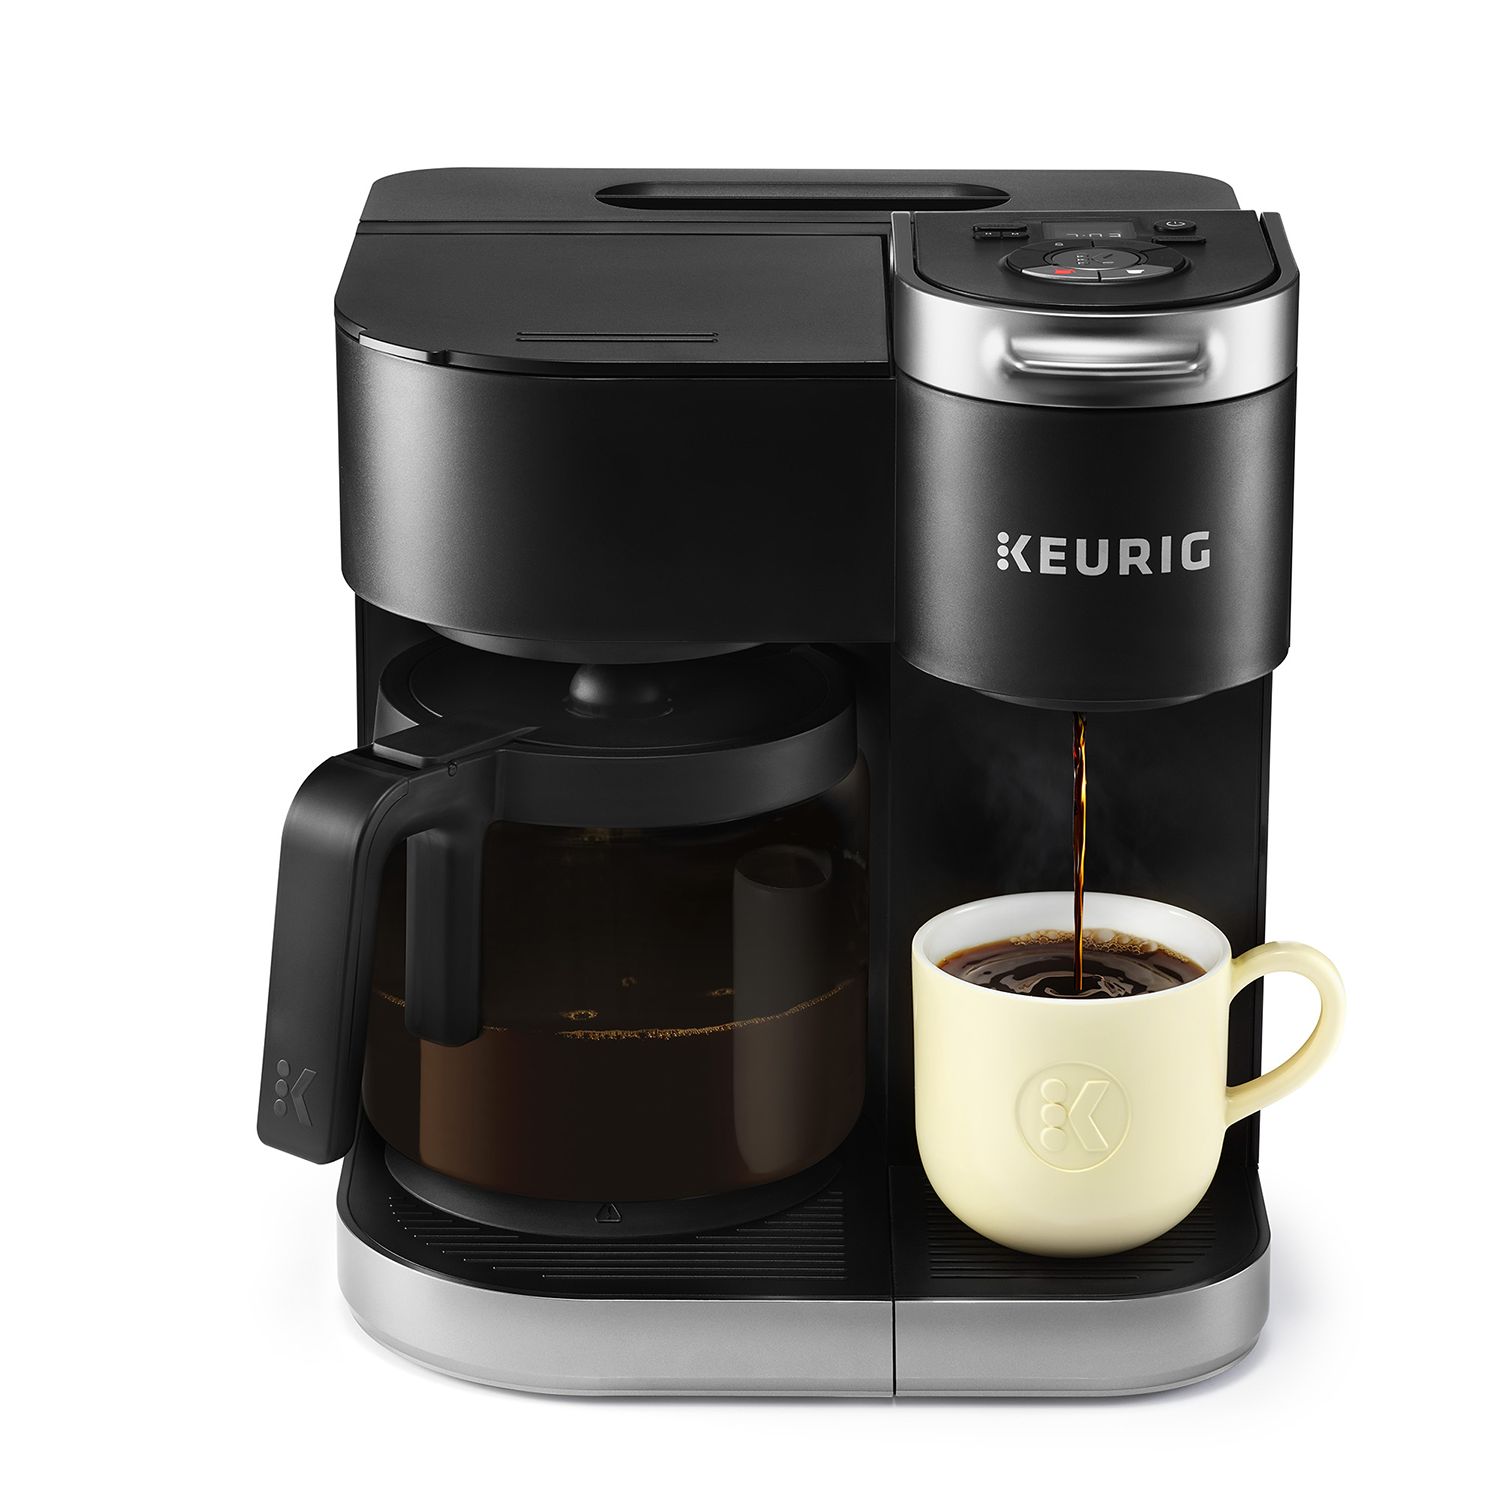 Keurig K-Duo Single-Serve & Carafe Coffee Maker + $15 Kohl's Cash $76.50 + Free Shipping